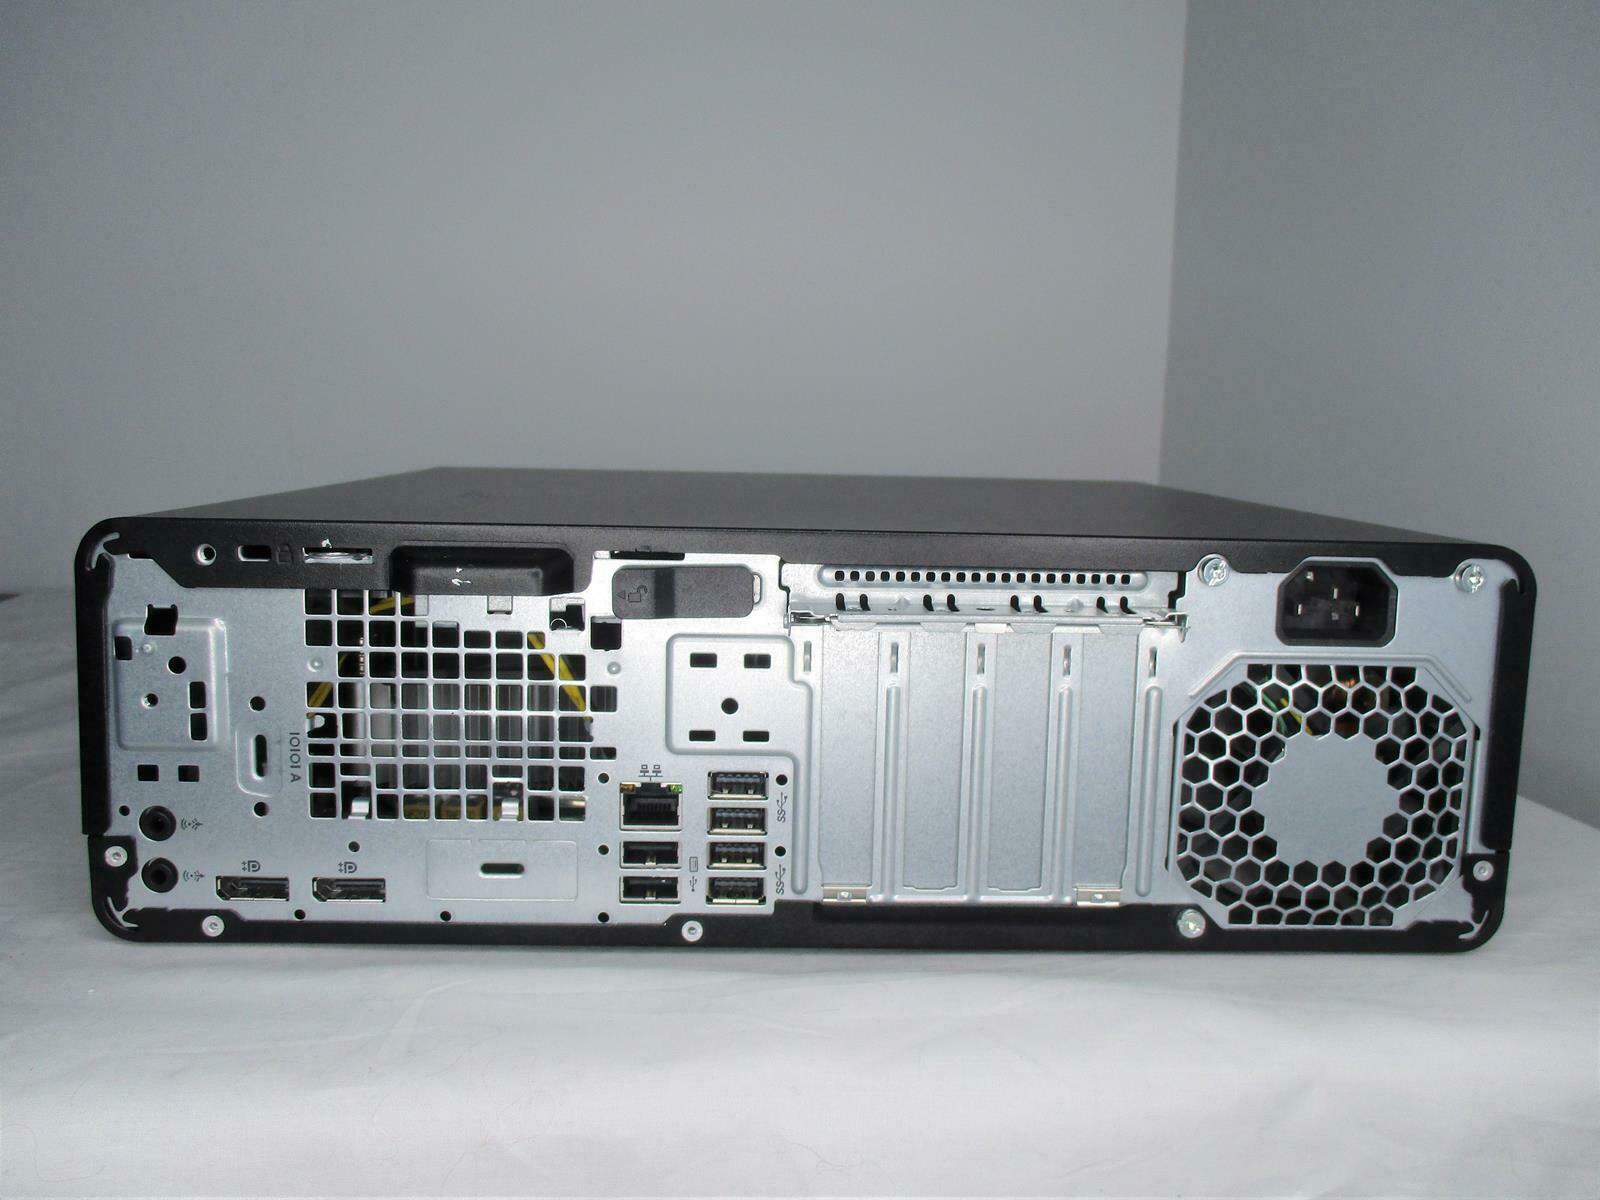 مینی کیس استوک مدل G3 800 i5-7500/8GB DDR4/SSD 256 GB